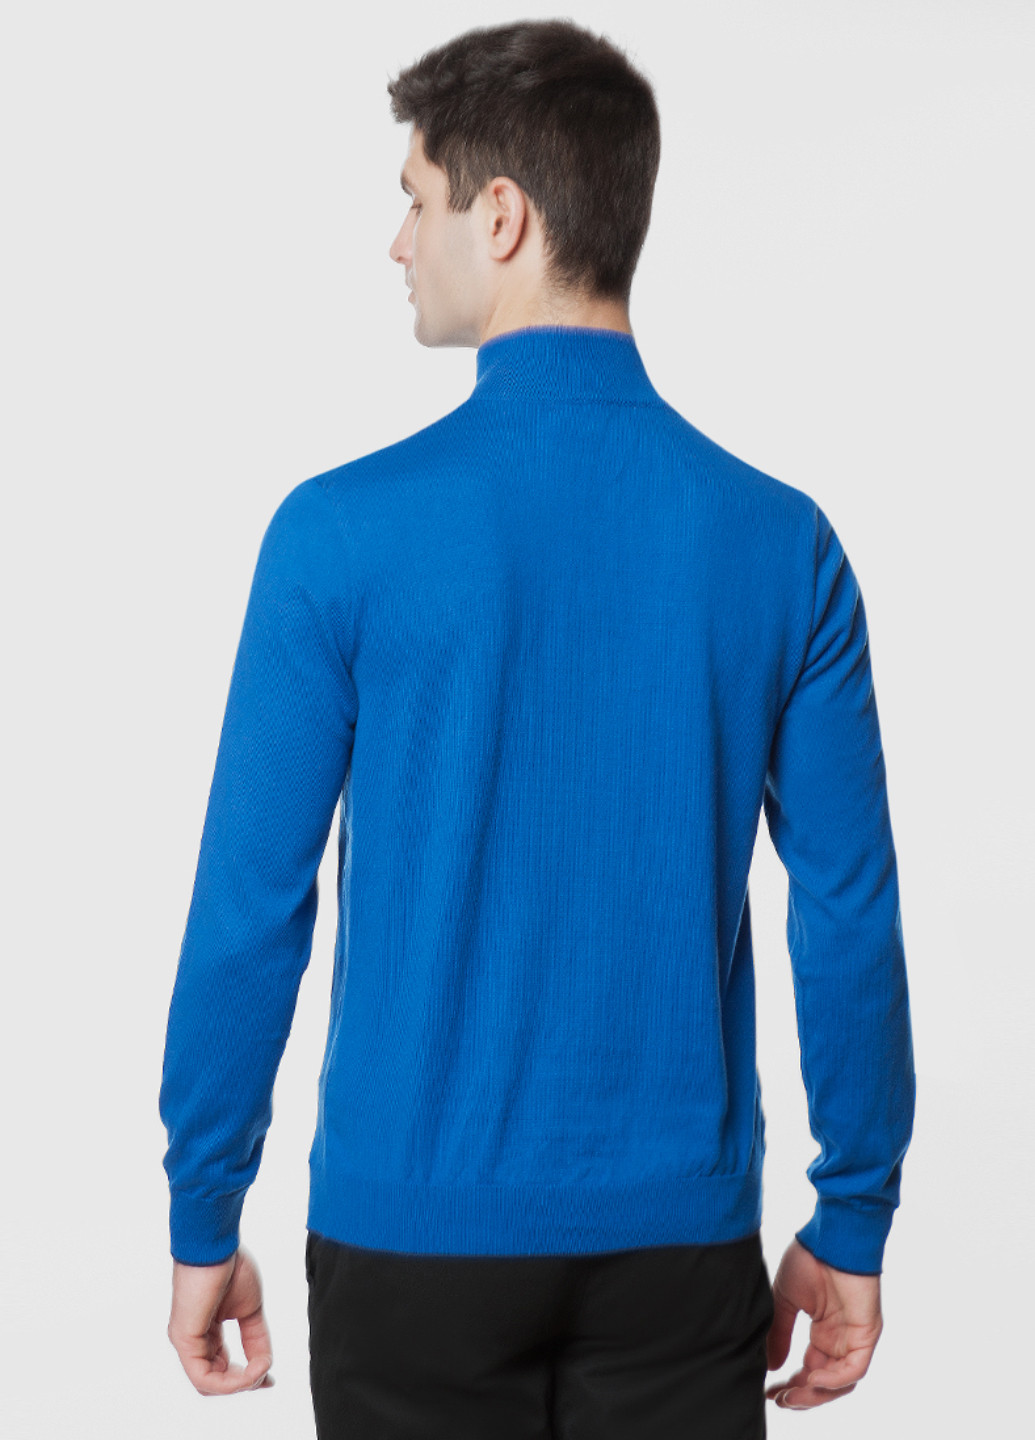 Синій демісезонний светр чоловічий Arber Zipper-neck AVT-14